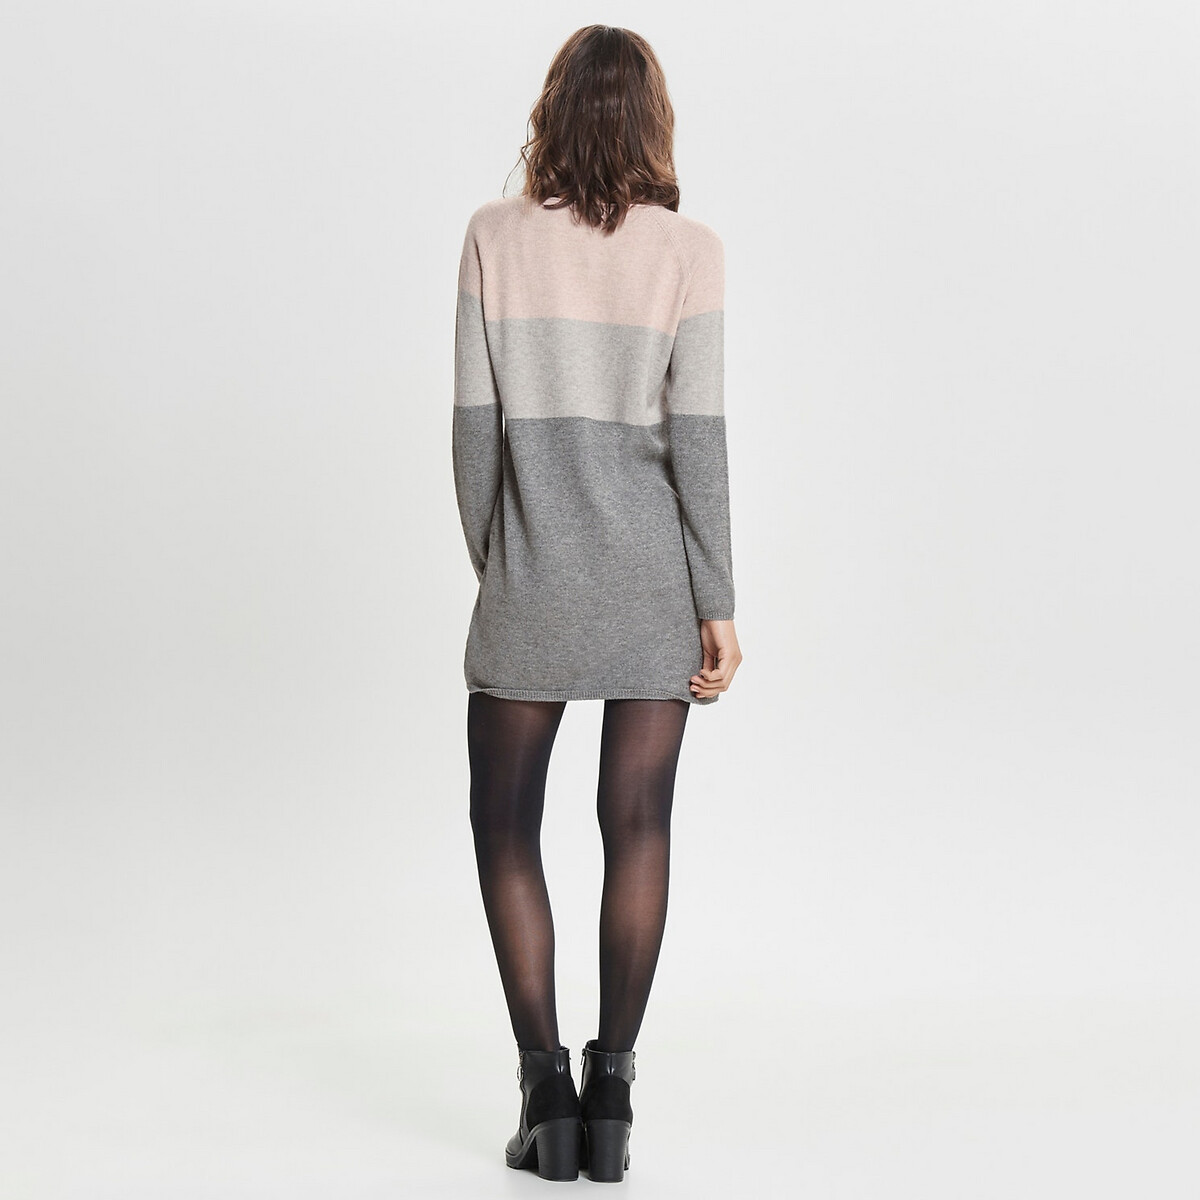 Платье-пуловер La Redoute Трехцветное из плотного трикотажа M розовый, размер M - фото 3